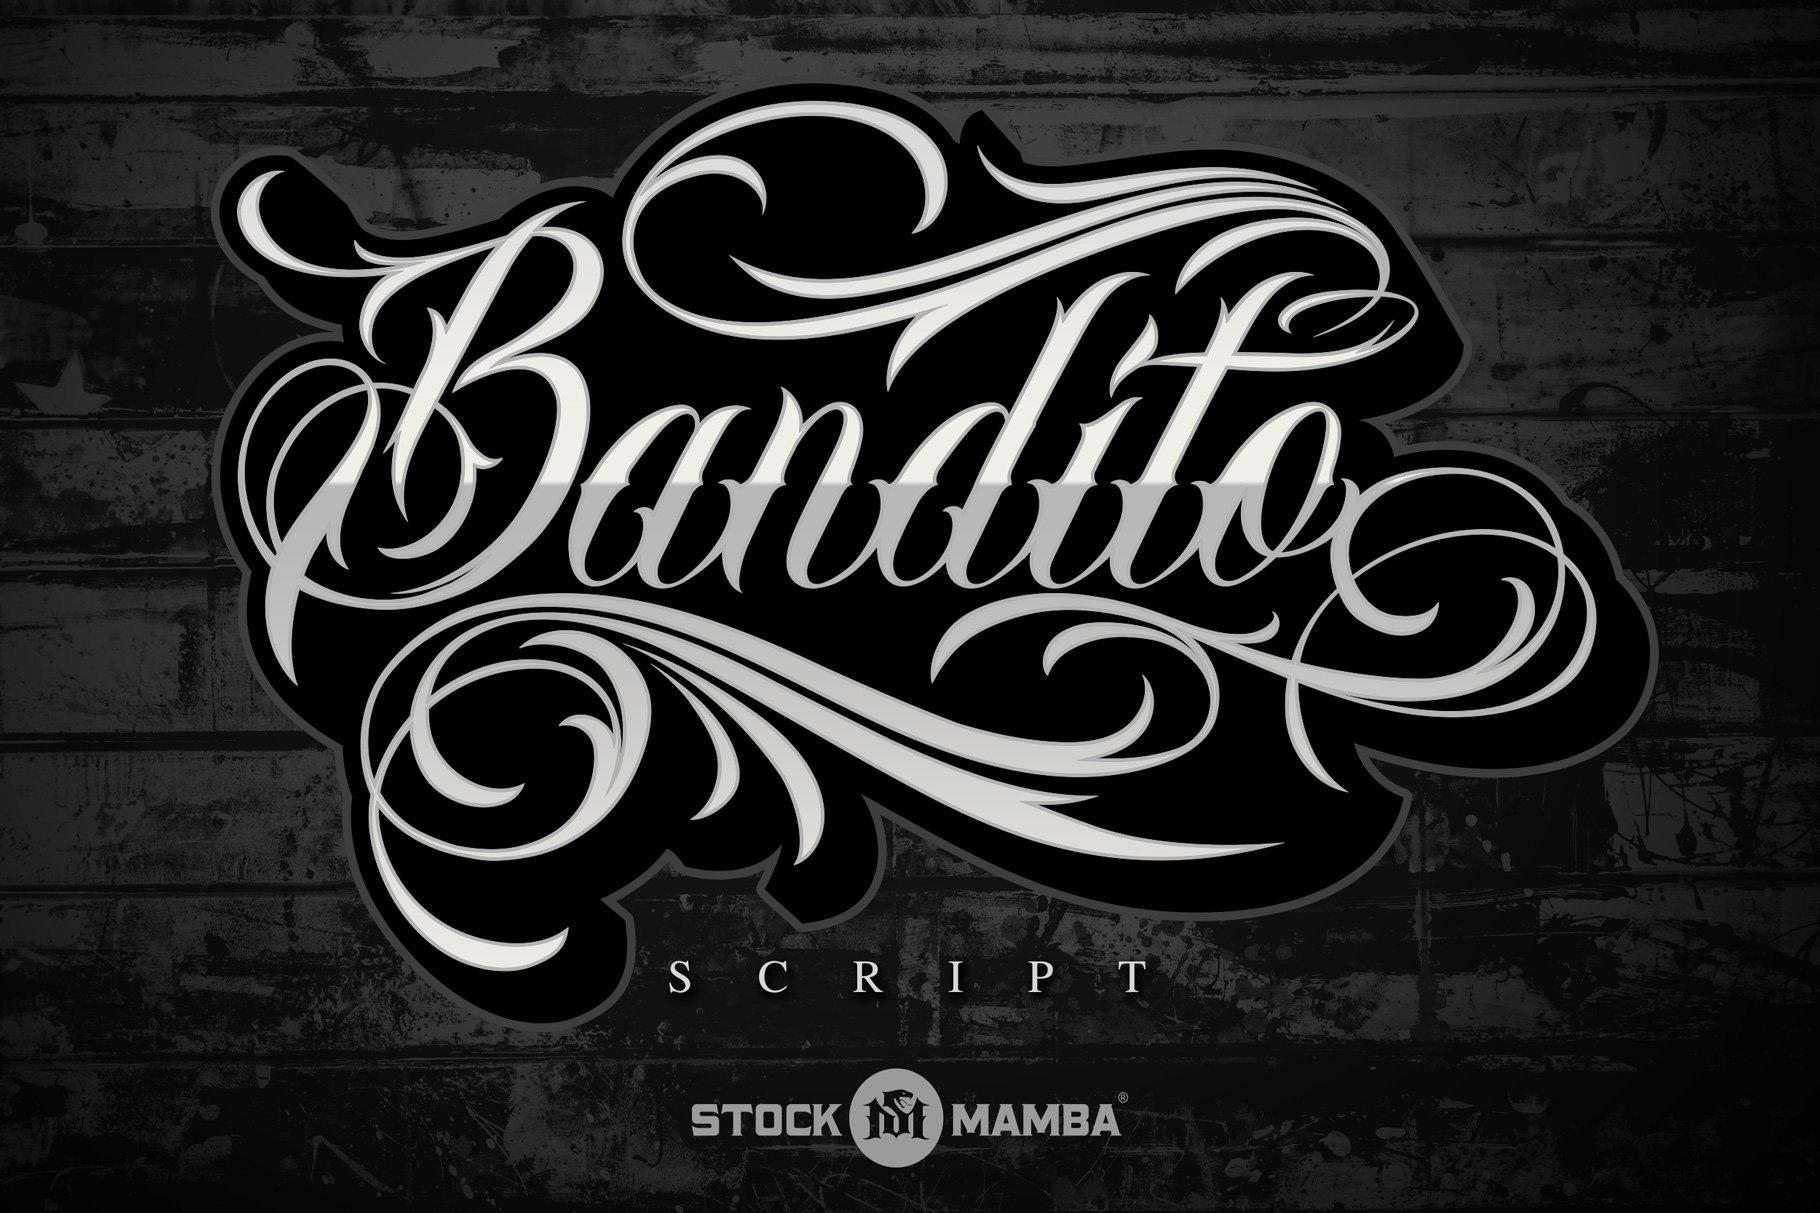 Bandito Script Font - Design Cuts